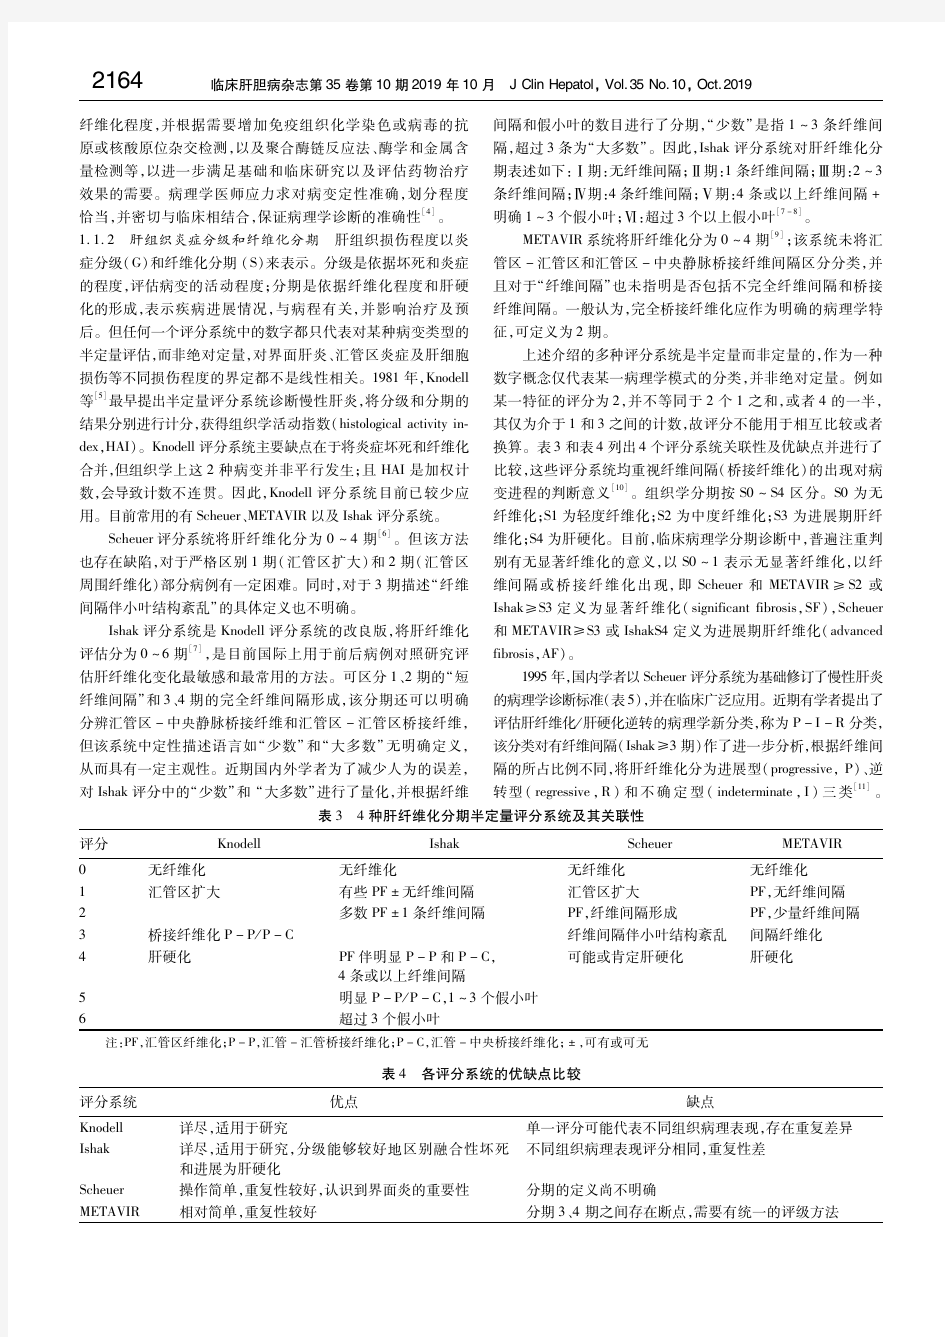 肝纤维化诊断及治疗共识(2019年) 中华医学会肝病学分会